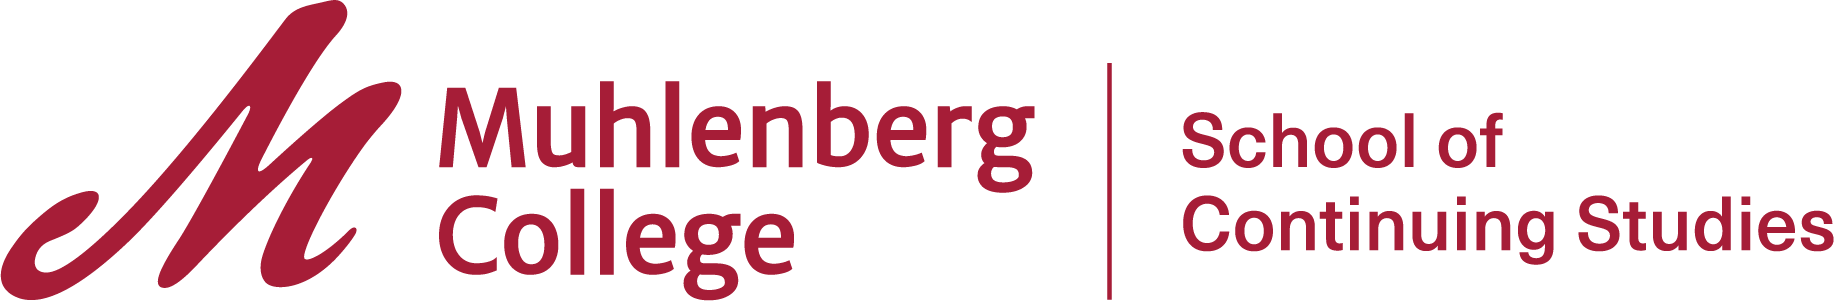 Muhlenberg College School of Continuing Studies Logo